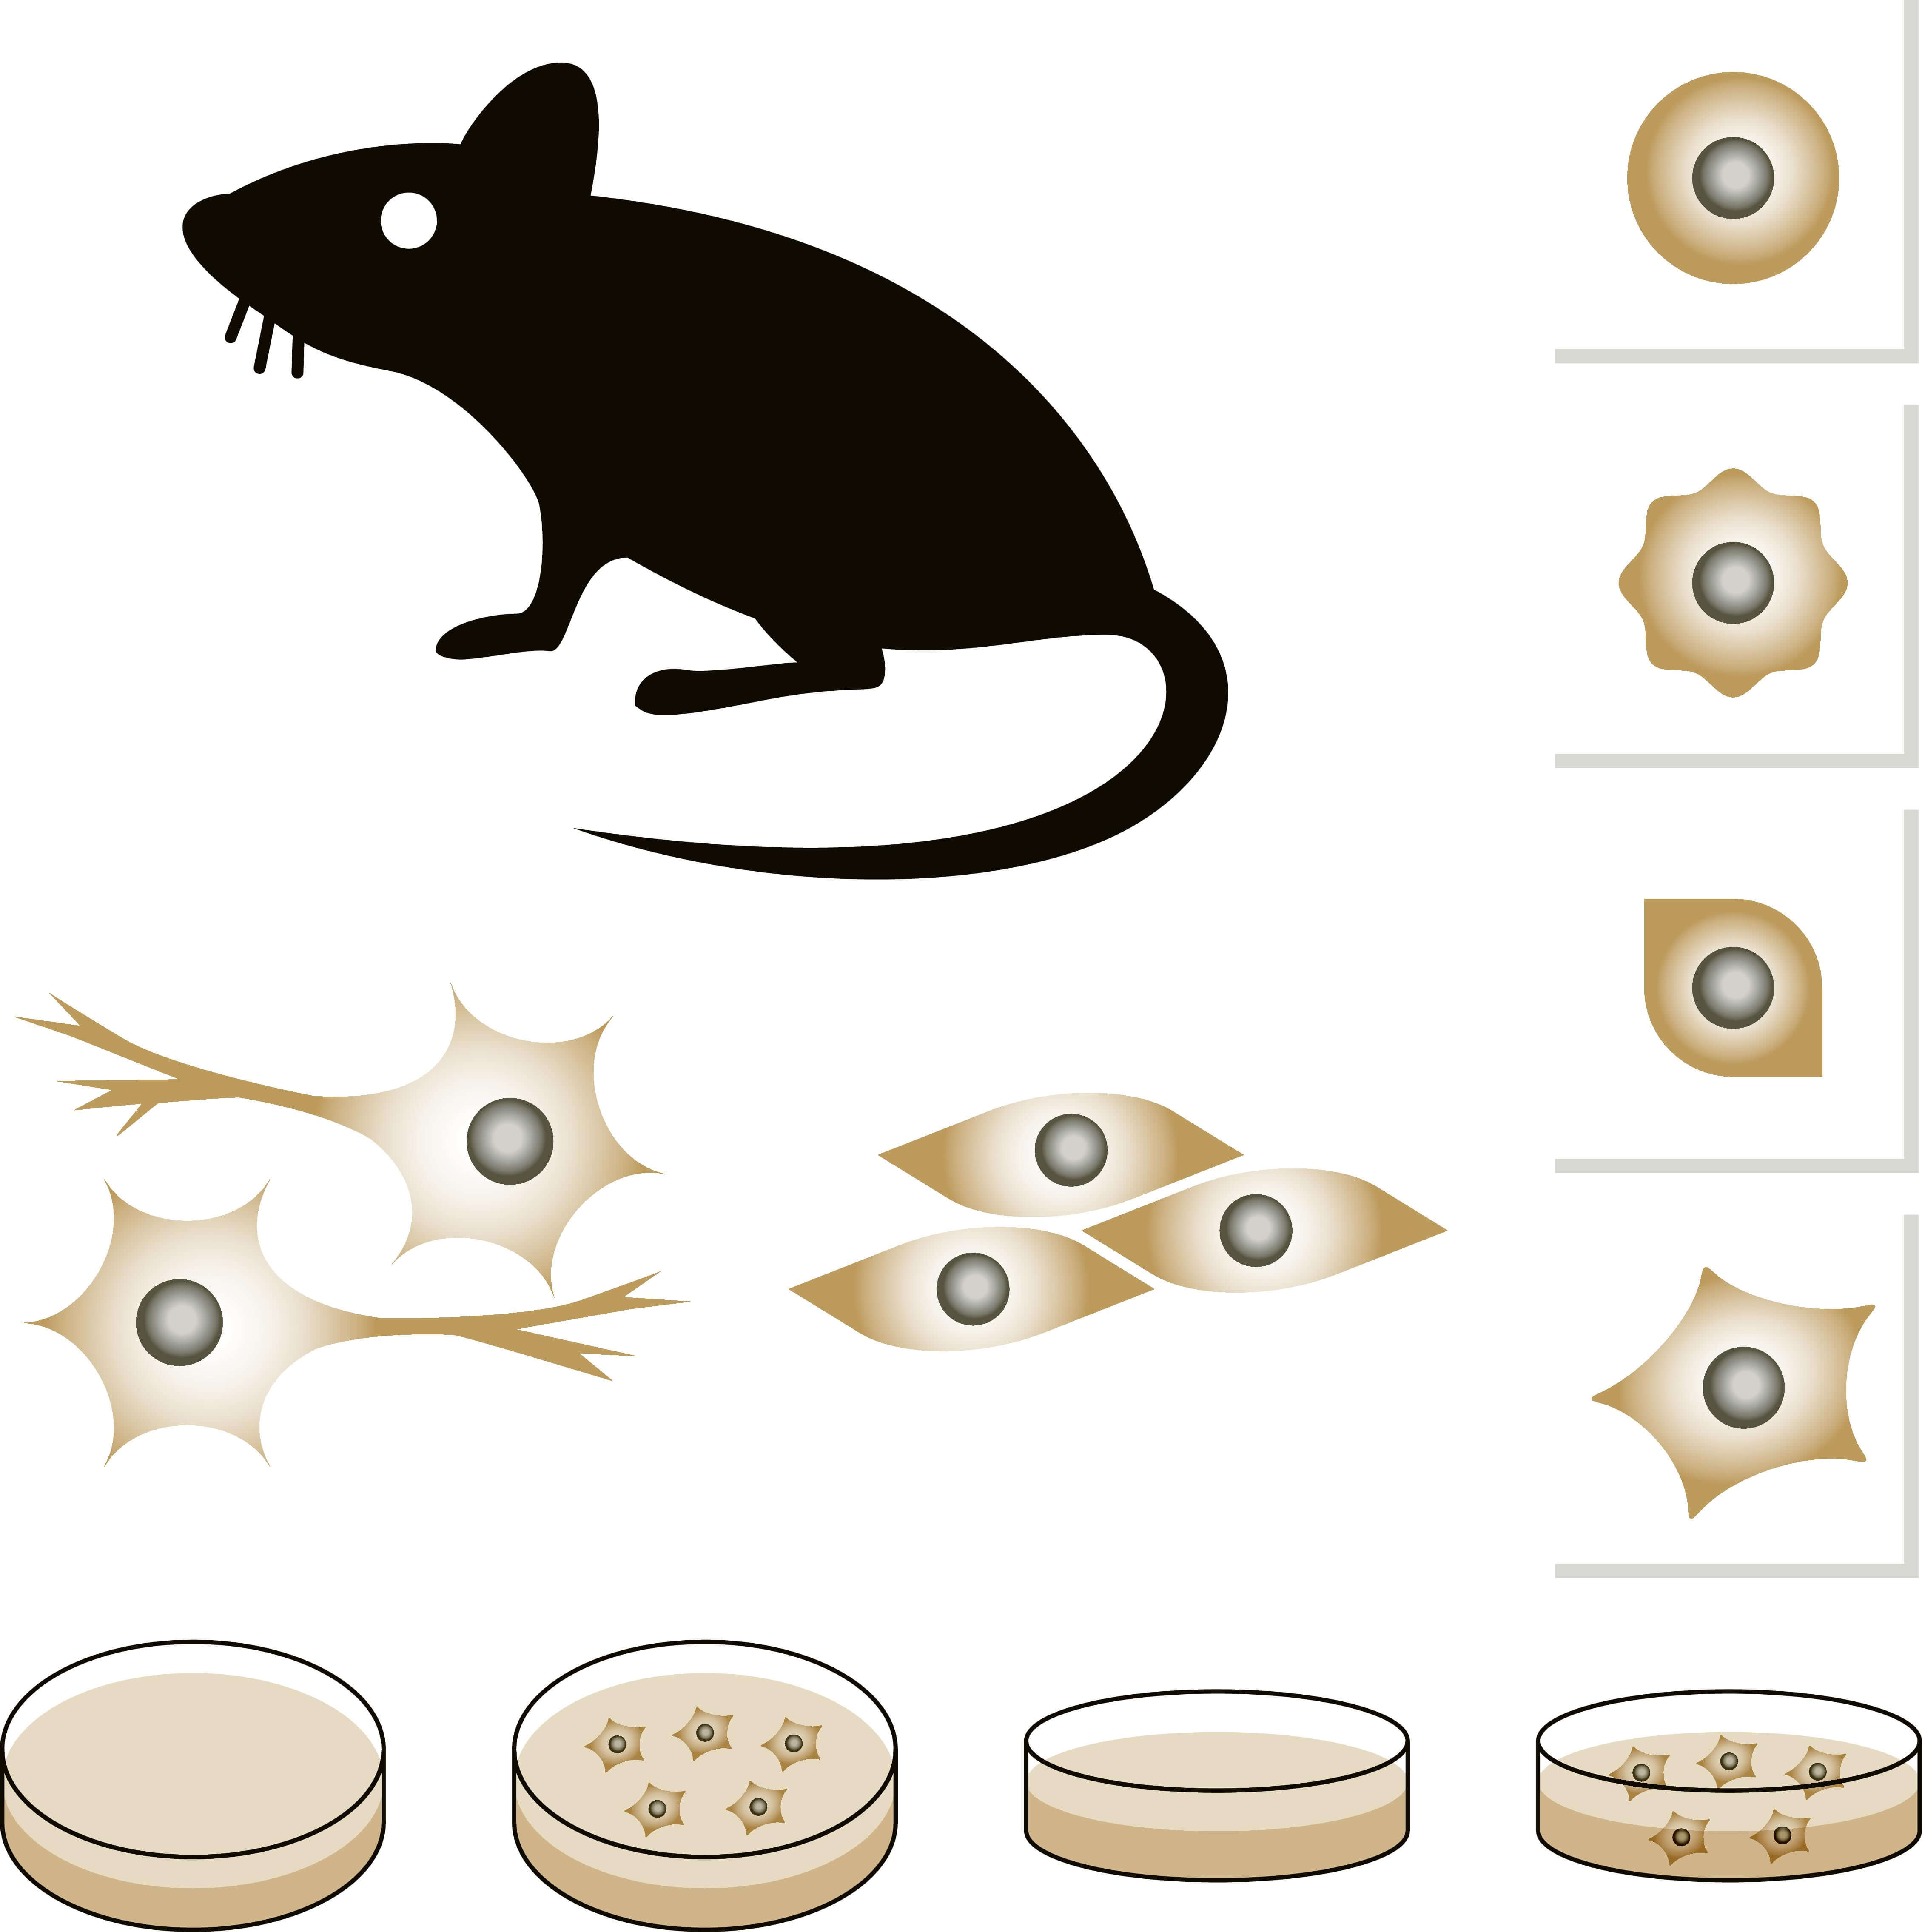 الفئران كنموذج لدراسة الخلايا الغازية. الرسم التوضيحي: شترستوك